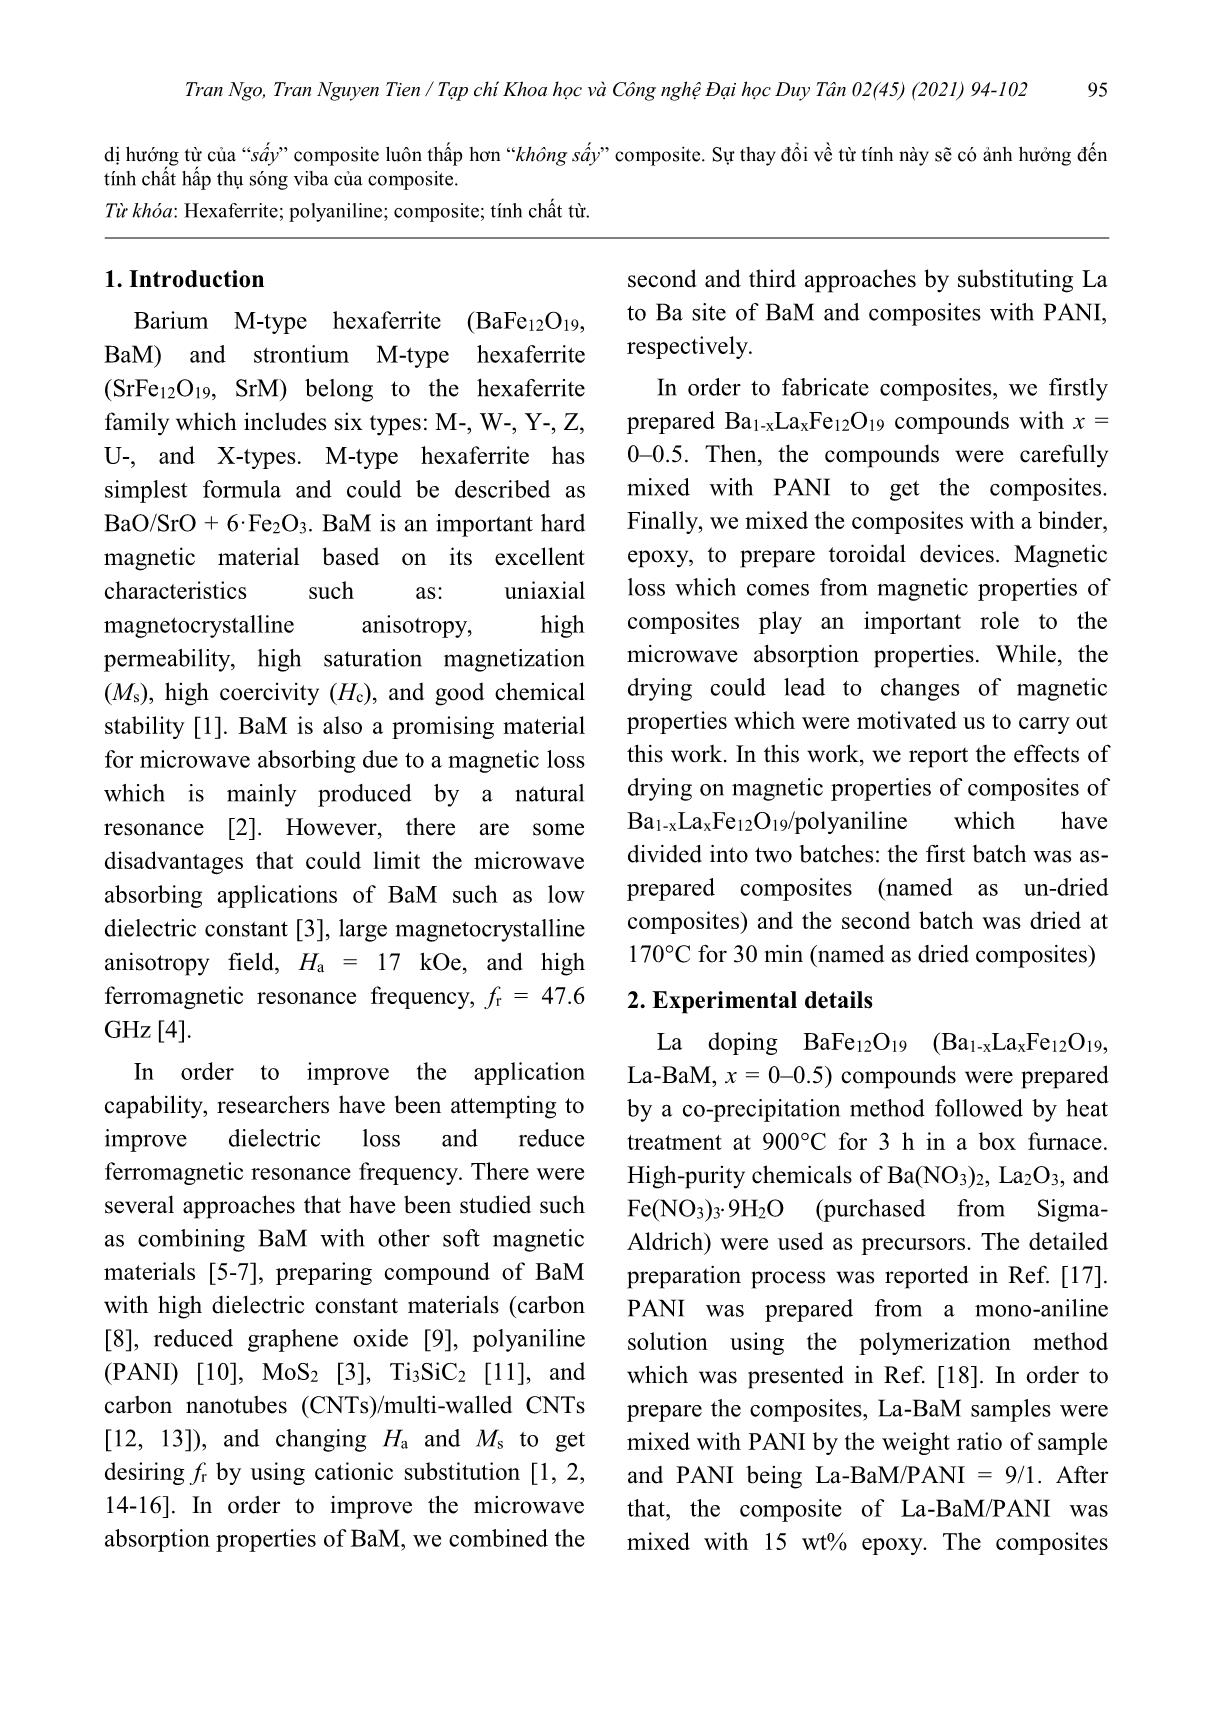 Ảnh hưởng của việc sấy lên từ tính của vật liệu composite Ba1-XLaxFe₁₂O₁₉/polyaniline trang 2